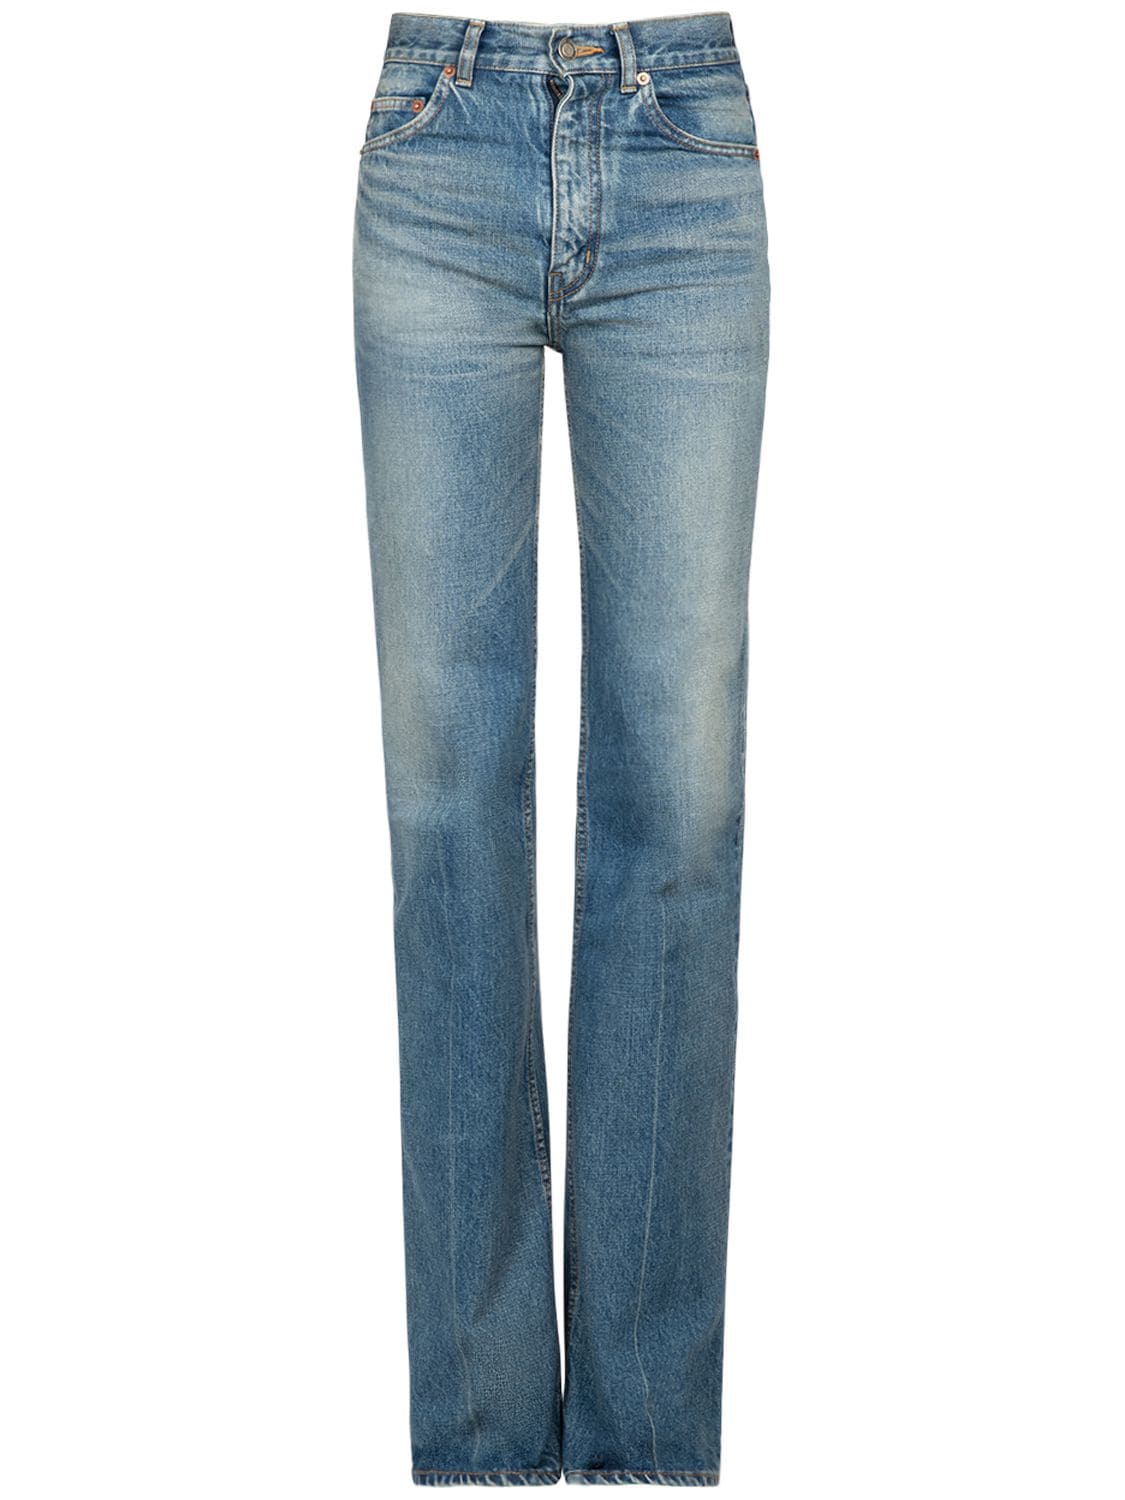 Vintage Denim 70’s Jeans – WOMEN > CLOTHING > JEANS